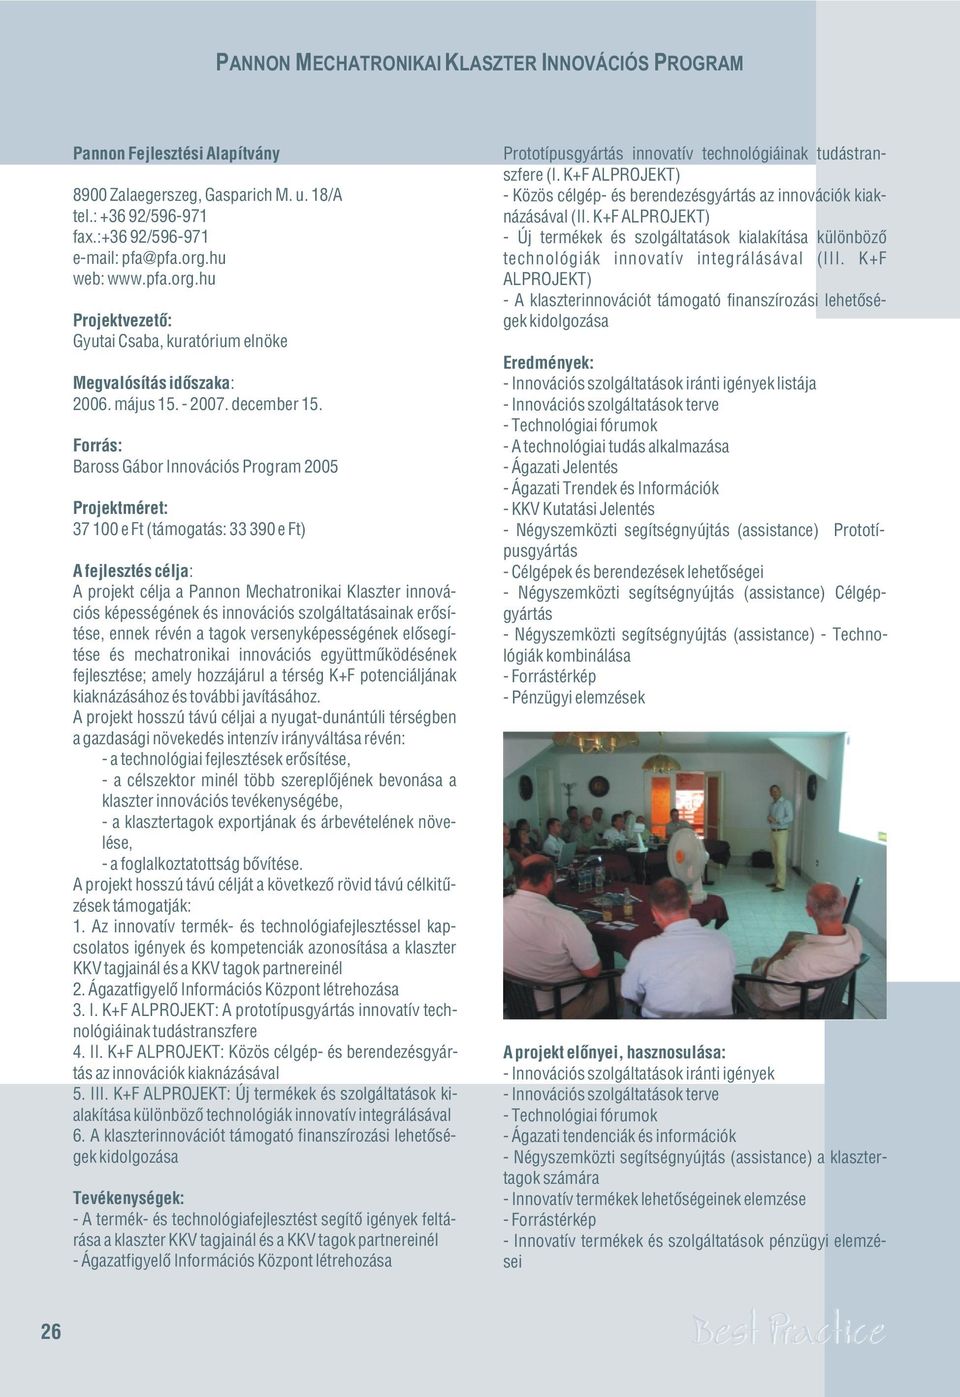 Baross Gábor Innovációs Program 2005 37 100 e Ft (támogatás: 33 390 e Ft) A projekt célja a Pannon Mechatronikai Klaszter innovációs képességének és innovációs szolgáltatásainak erõsítése, ennek